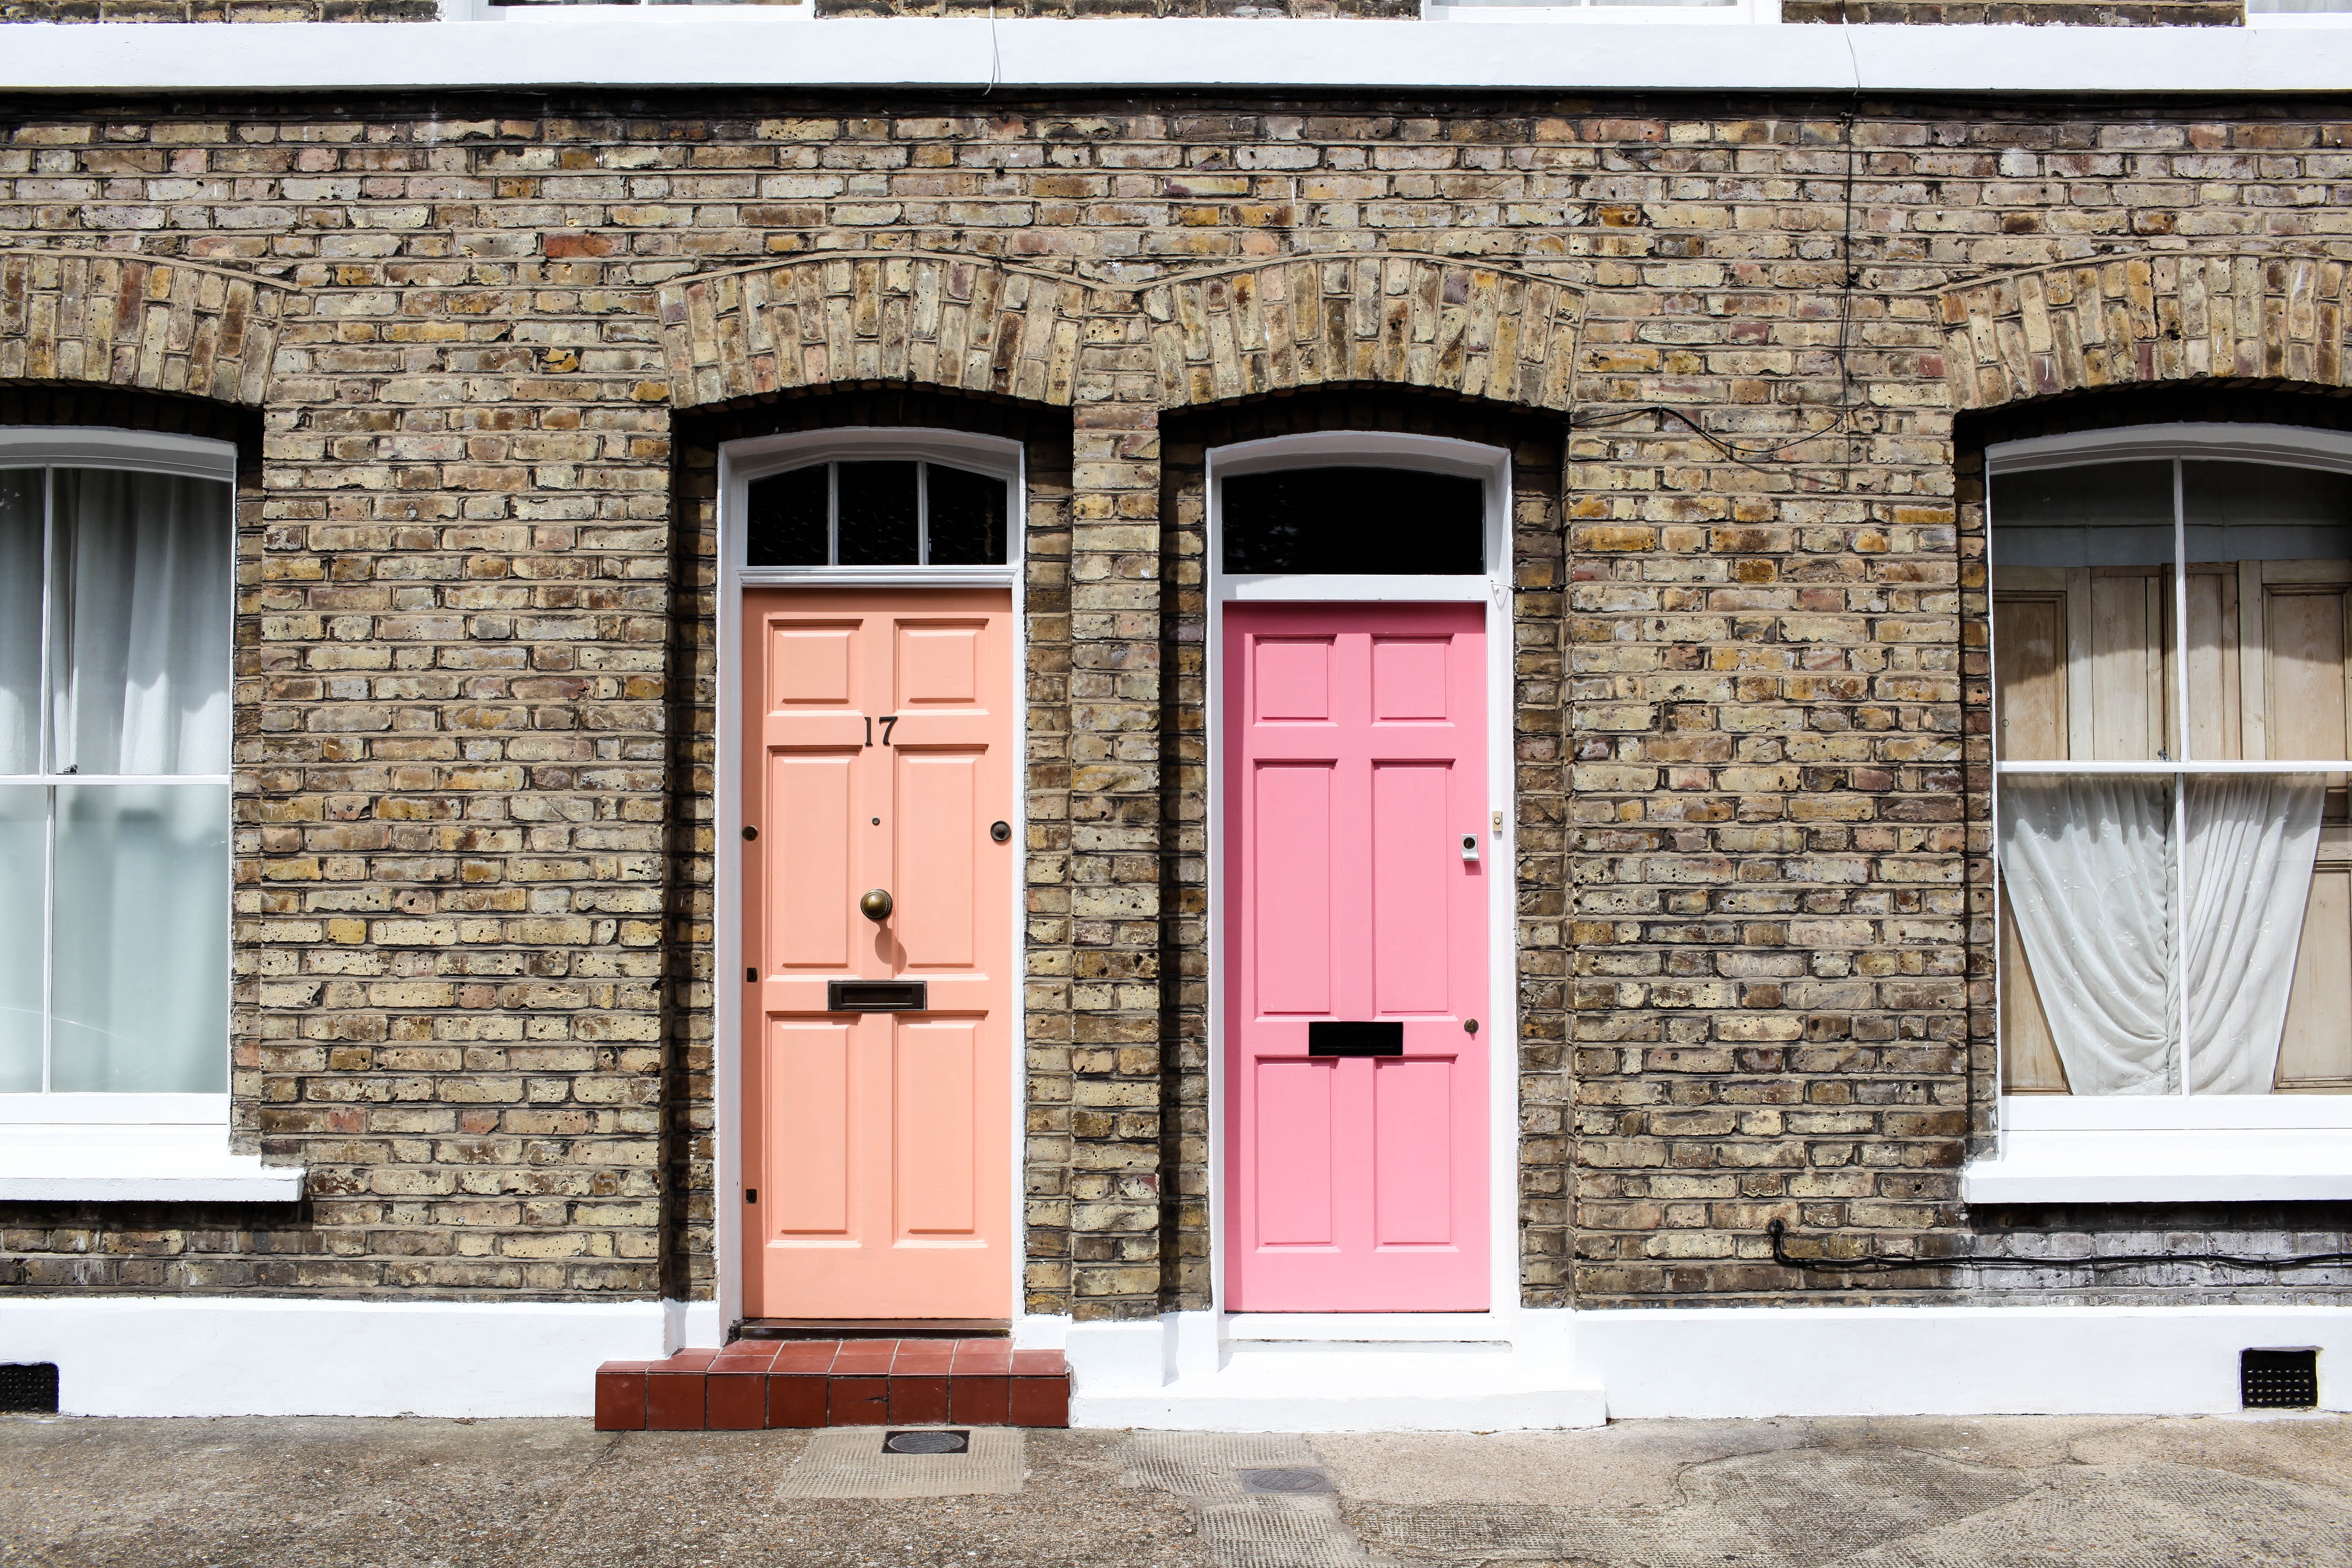 Image of terraced houses with pink door and red door